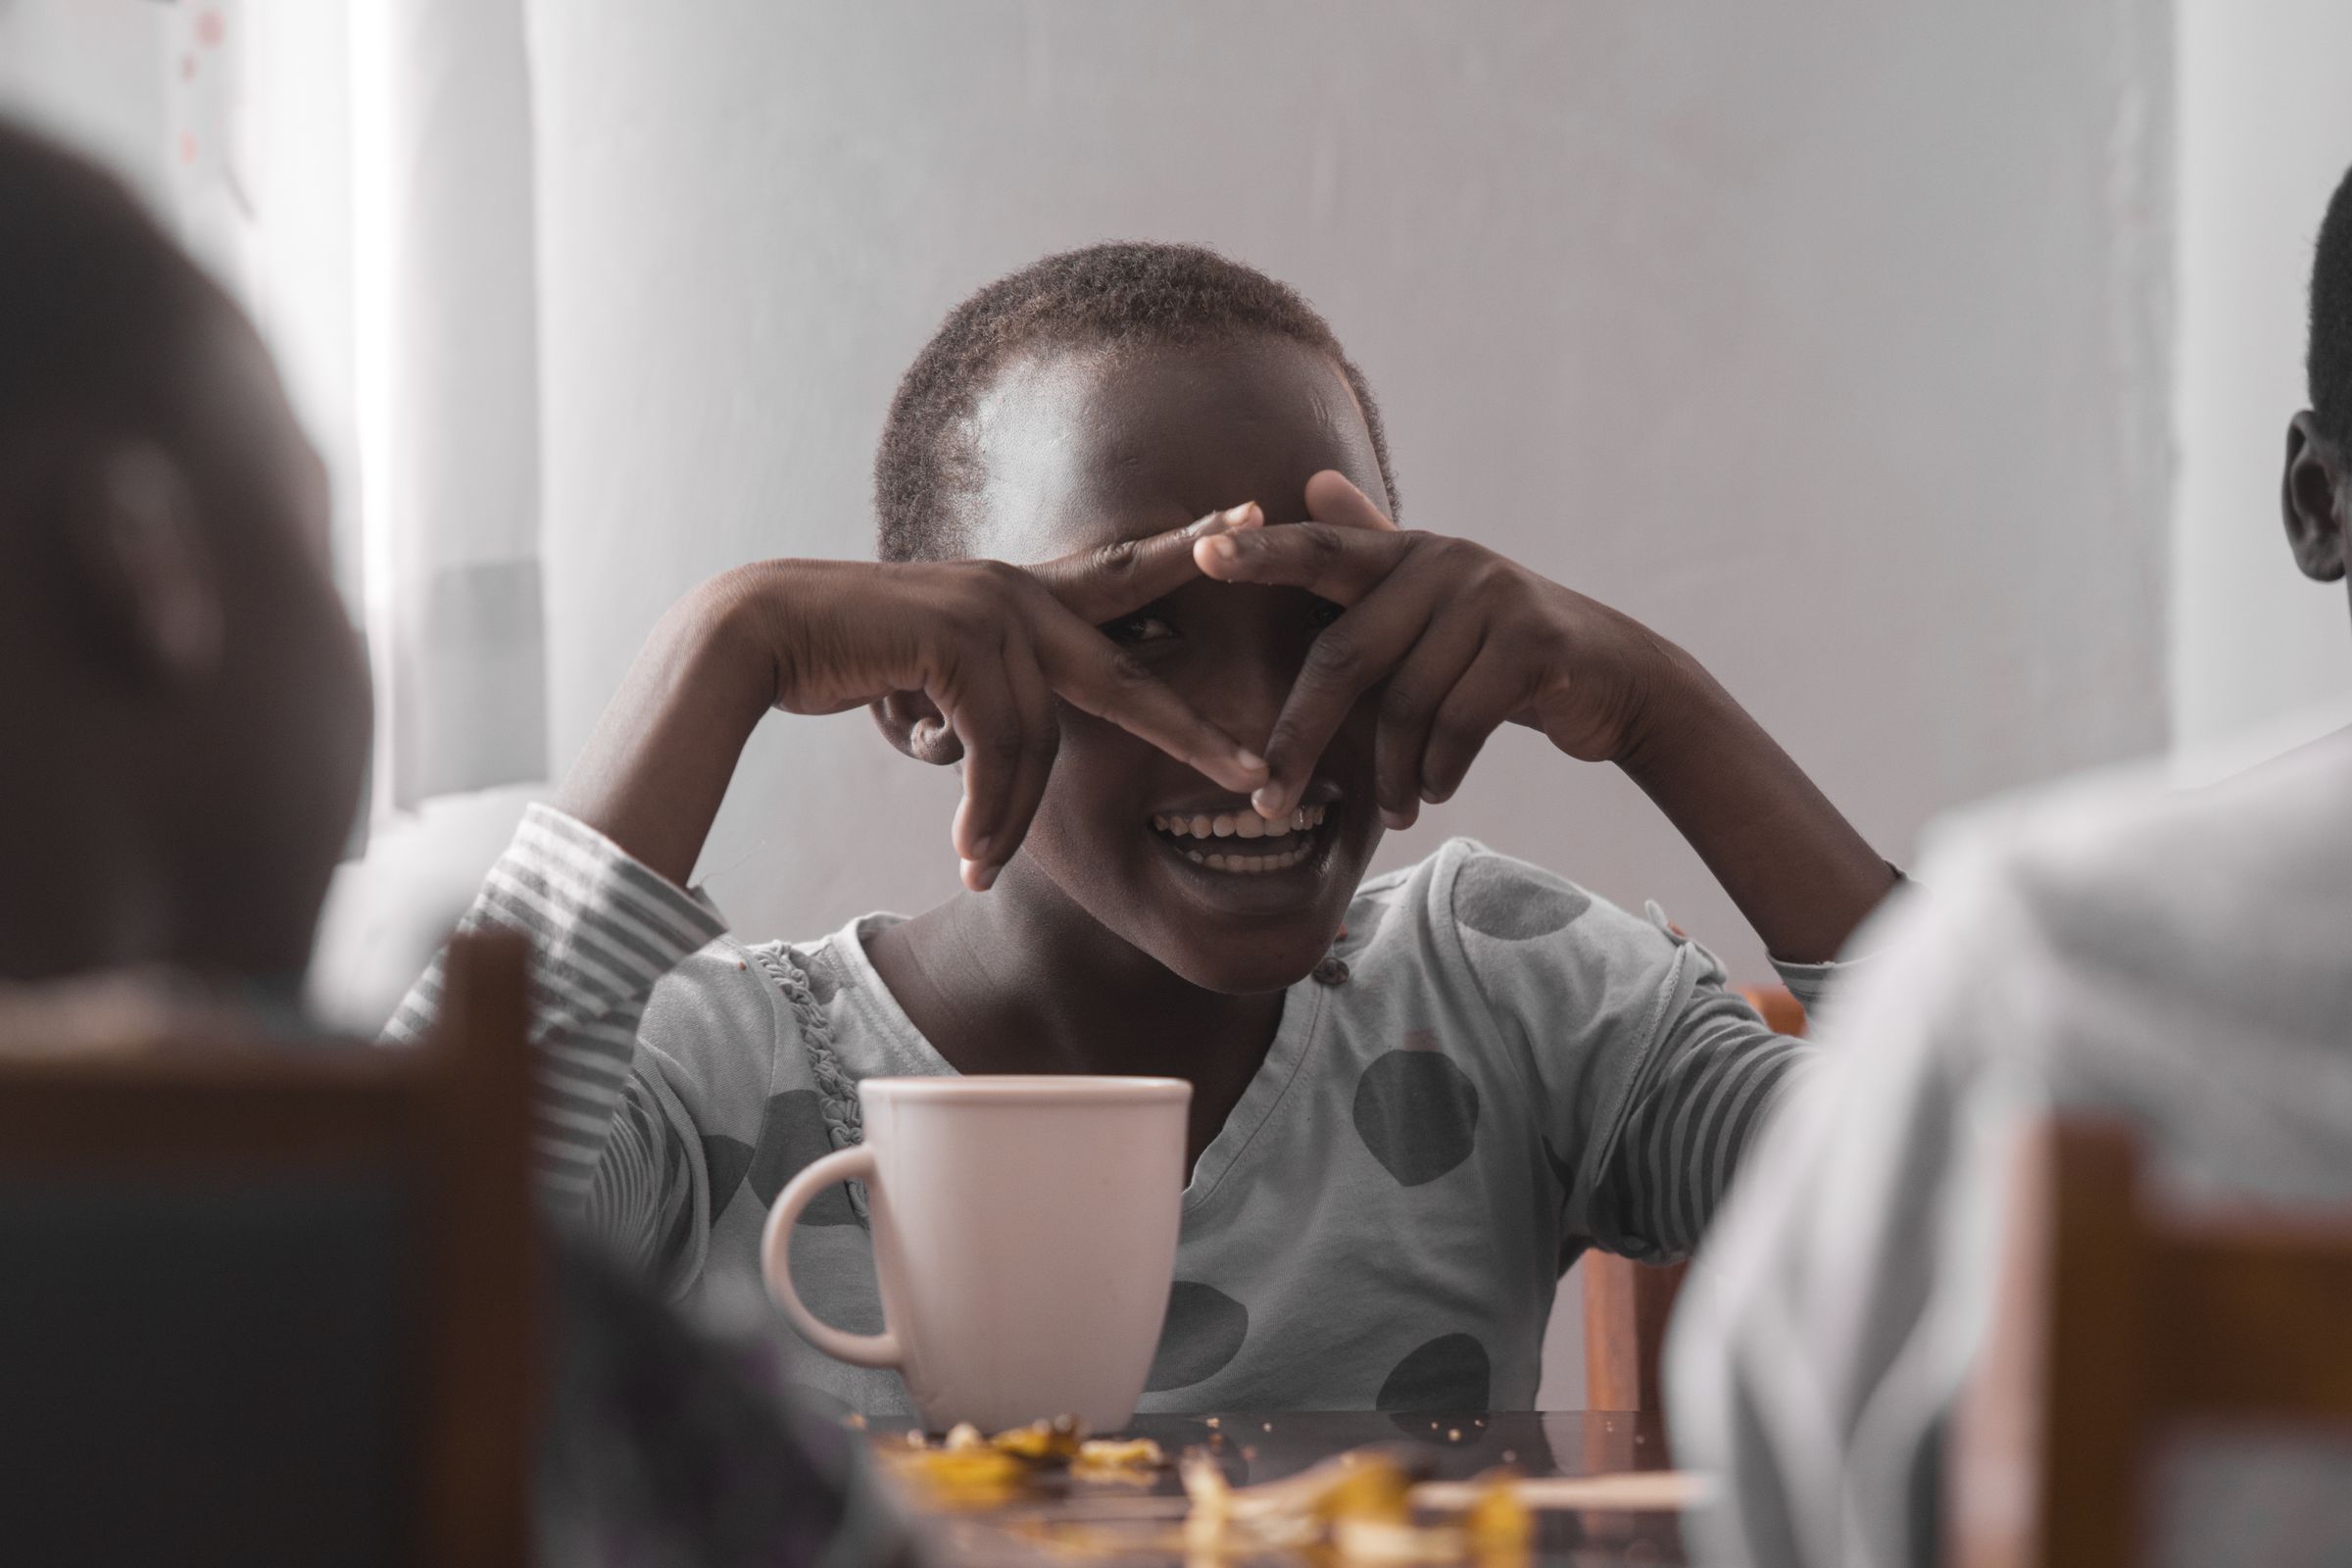 Rosa, ein Mädchen im Schutzhaus in Kenia, sitzt am Tisch, schaut durch ihre Hände und lacht. (Quelle: Christian Nusch)